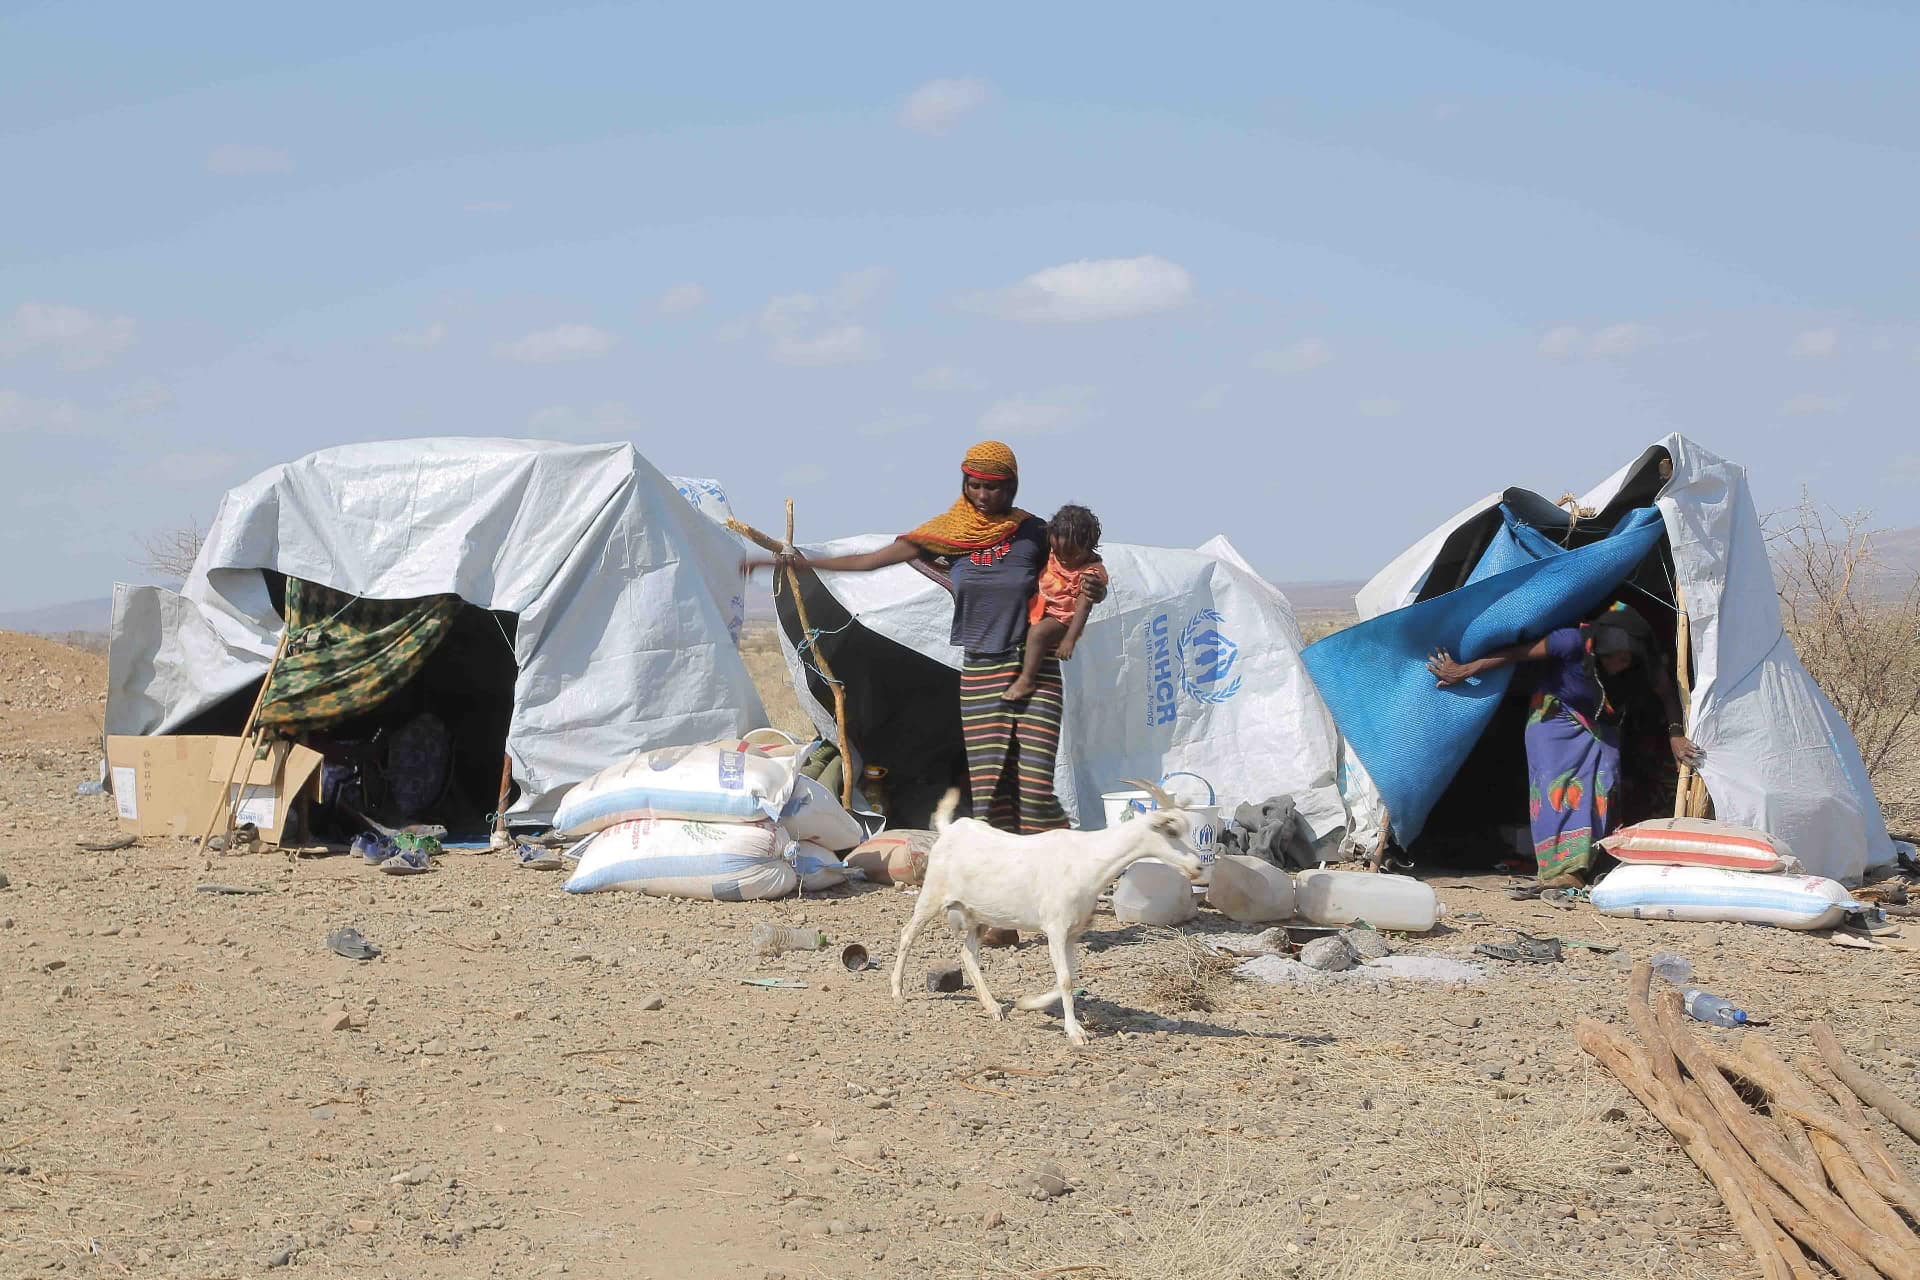 Eine Frau mit einem Kind am Arm steht vor behelfsmäßigen Zelten in einem Flüchtlingslager in Äthiopien